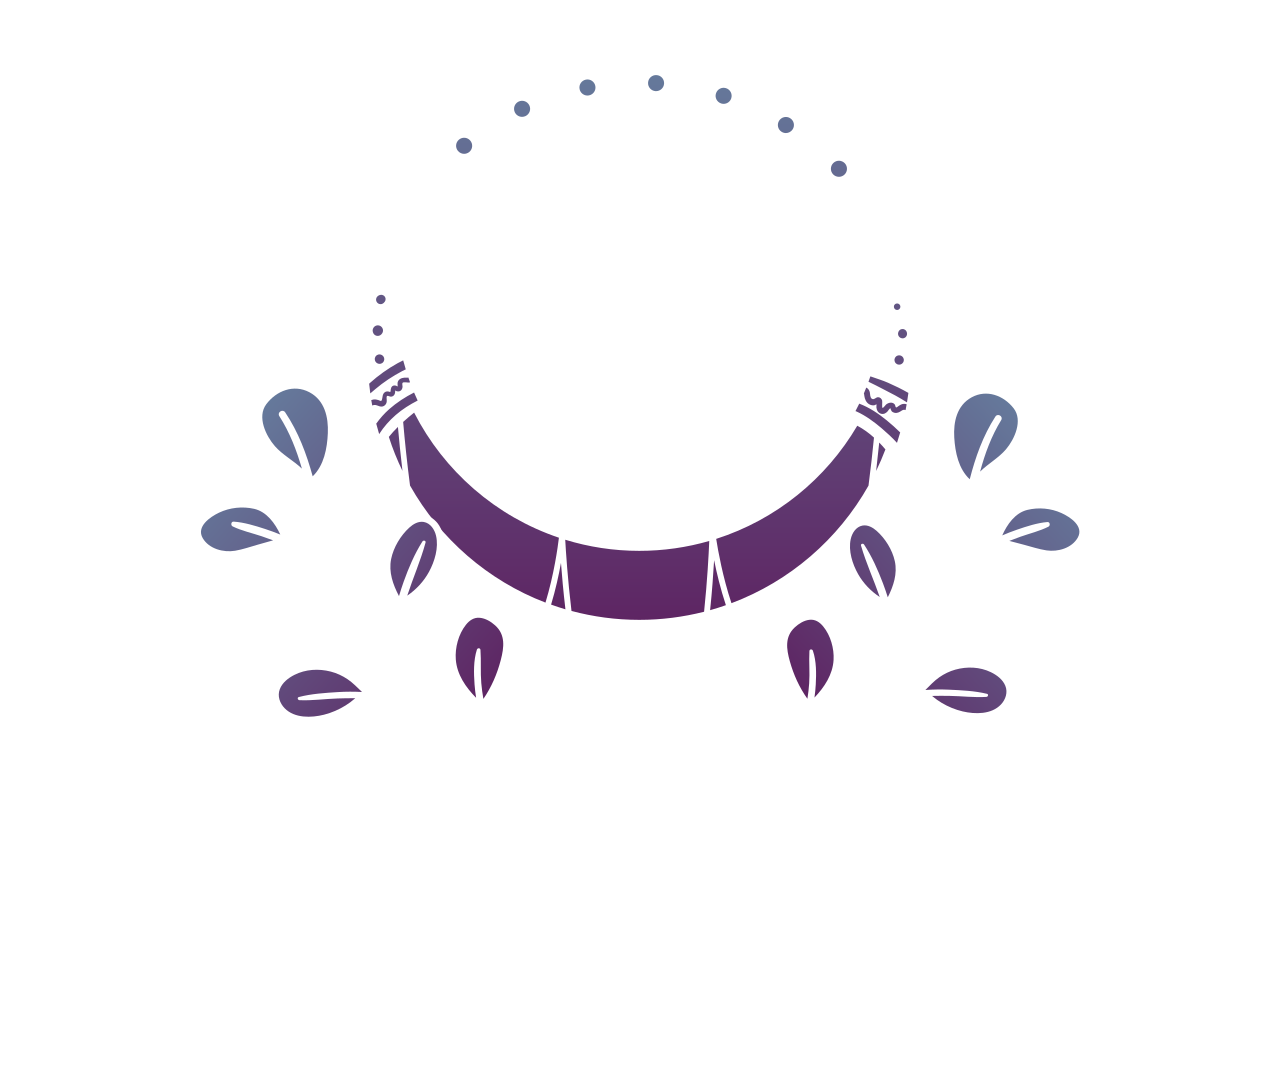 THE GYPSY GURU's logo